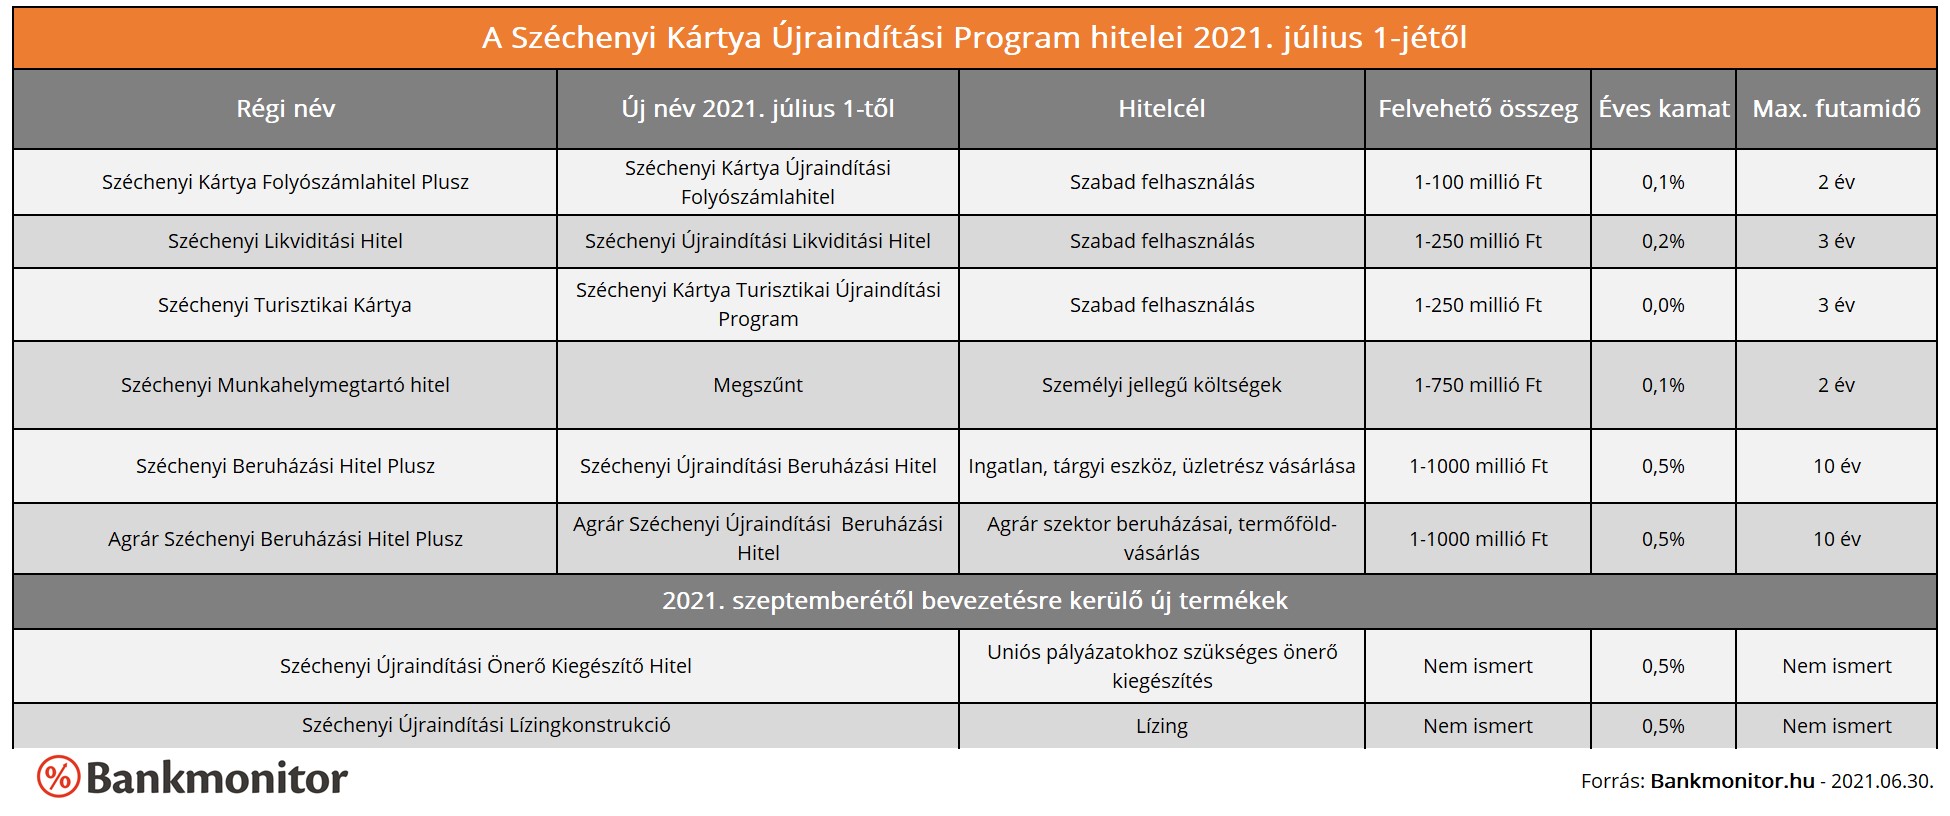 A Széchenyi Kártya Újraindítási Program hitelei 2021. július 1-jétől